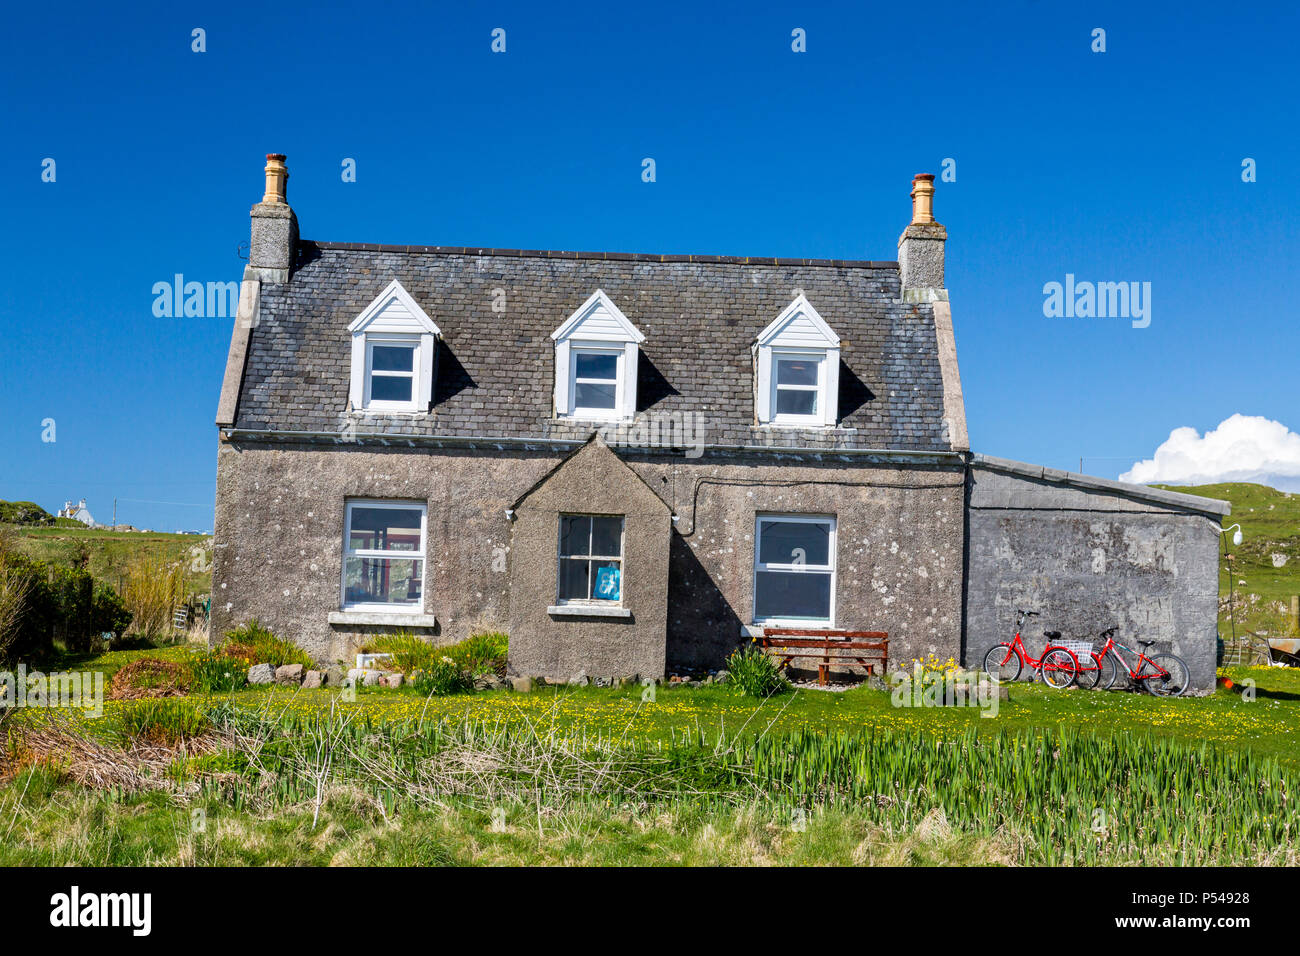 Une petite maison avec des vélos rouges à l'extérieur sur l'Hebridean island d'Iona, Argyll and Bute, Ecosse, Royaume-Uni Banque D'Images